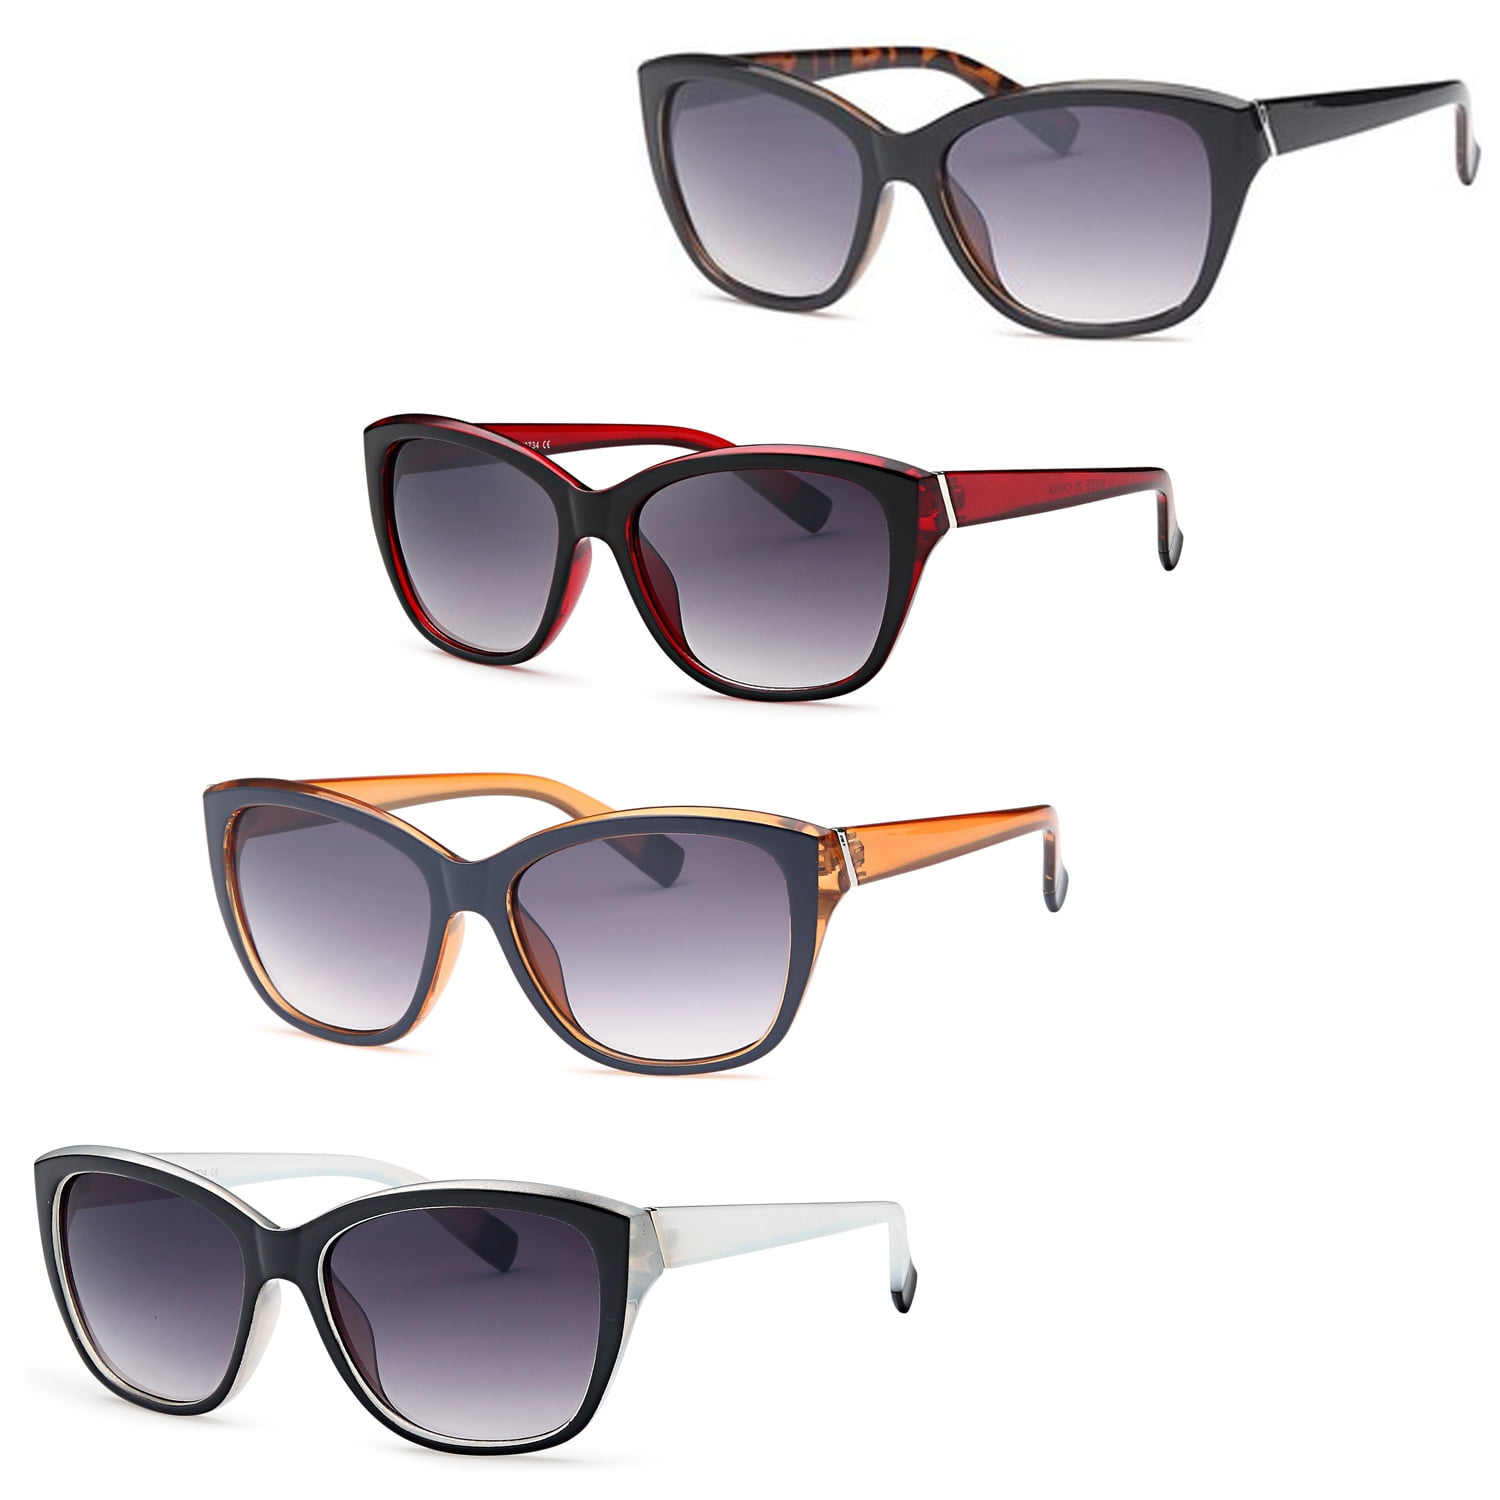 AFONiE Thick Frame Retro Square Sunglasses (4 pack) - Walmart.com